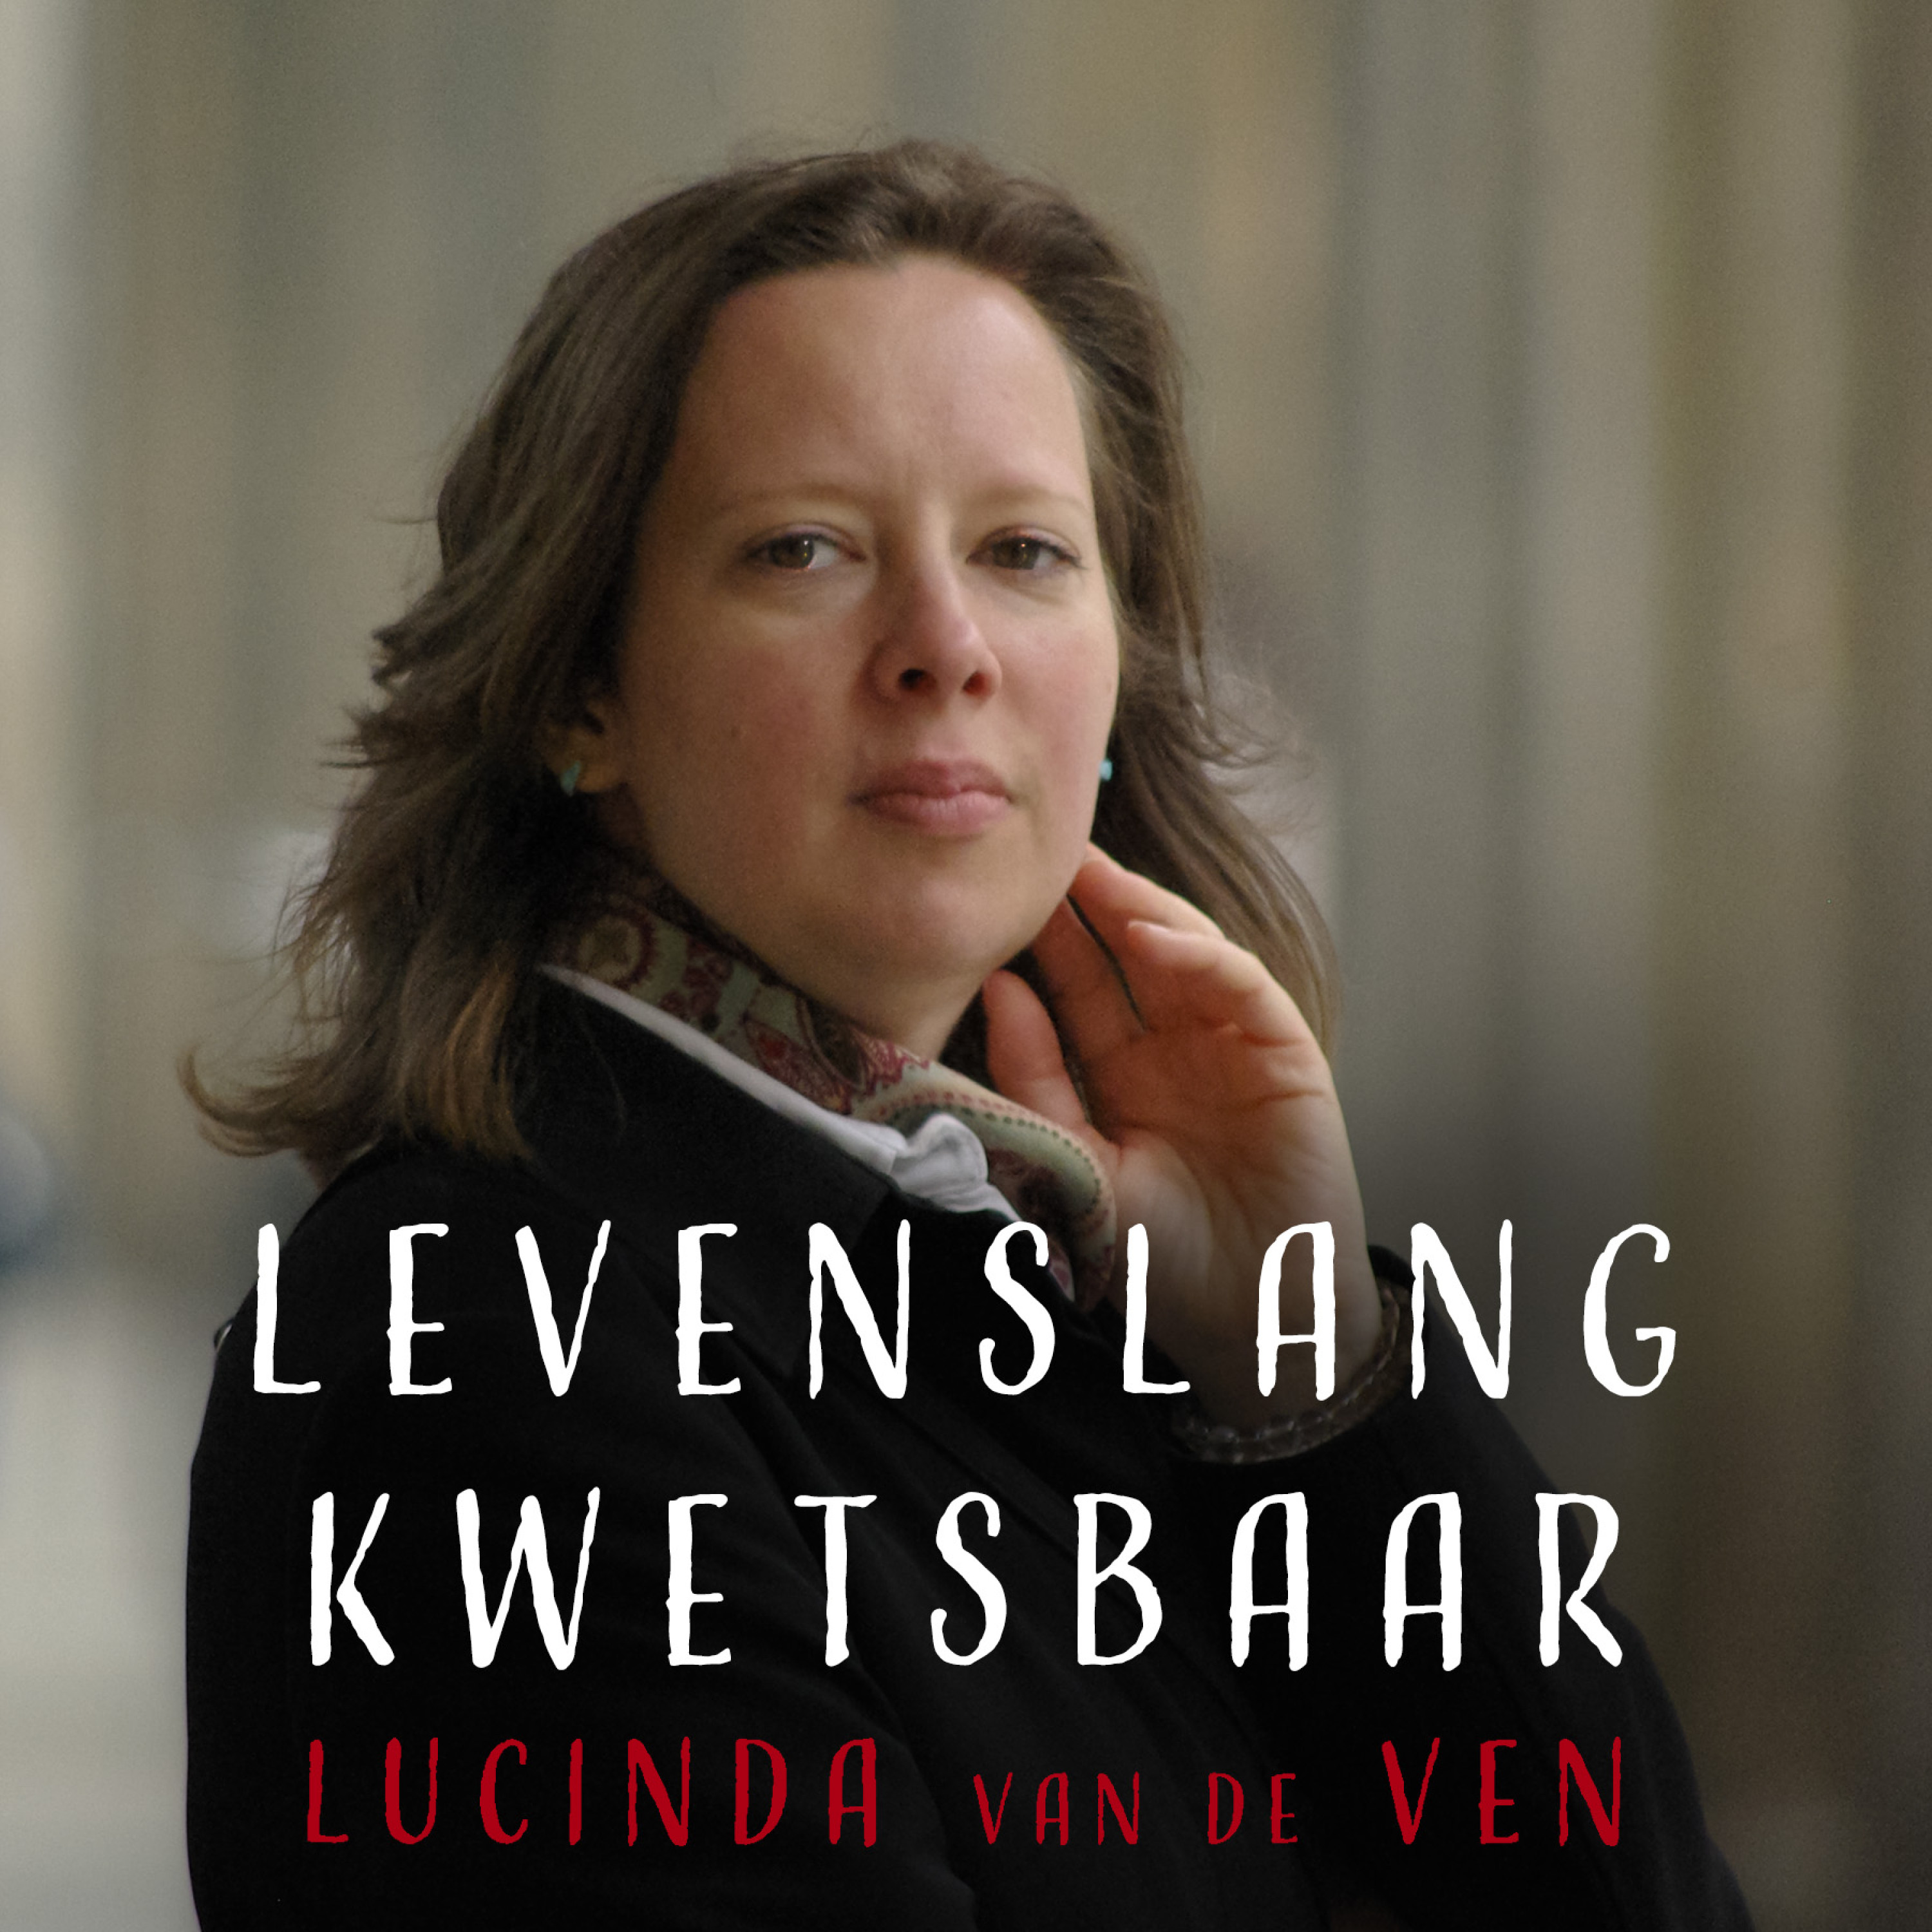 Levenslang kwetsbaar trailer I Luister naar de podcast van Lucinda van de Ven